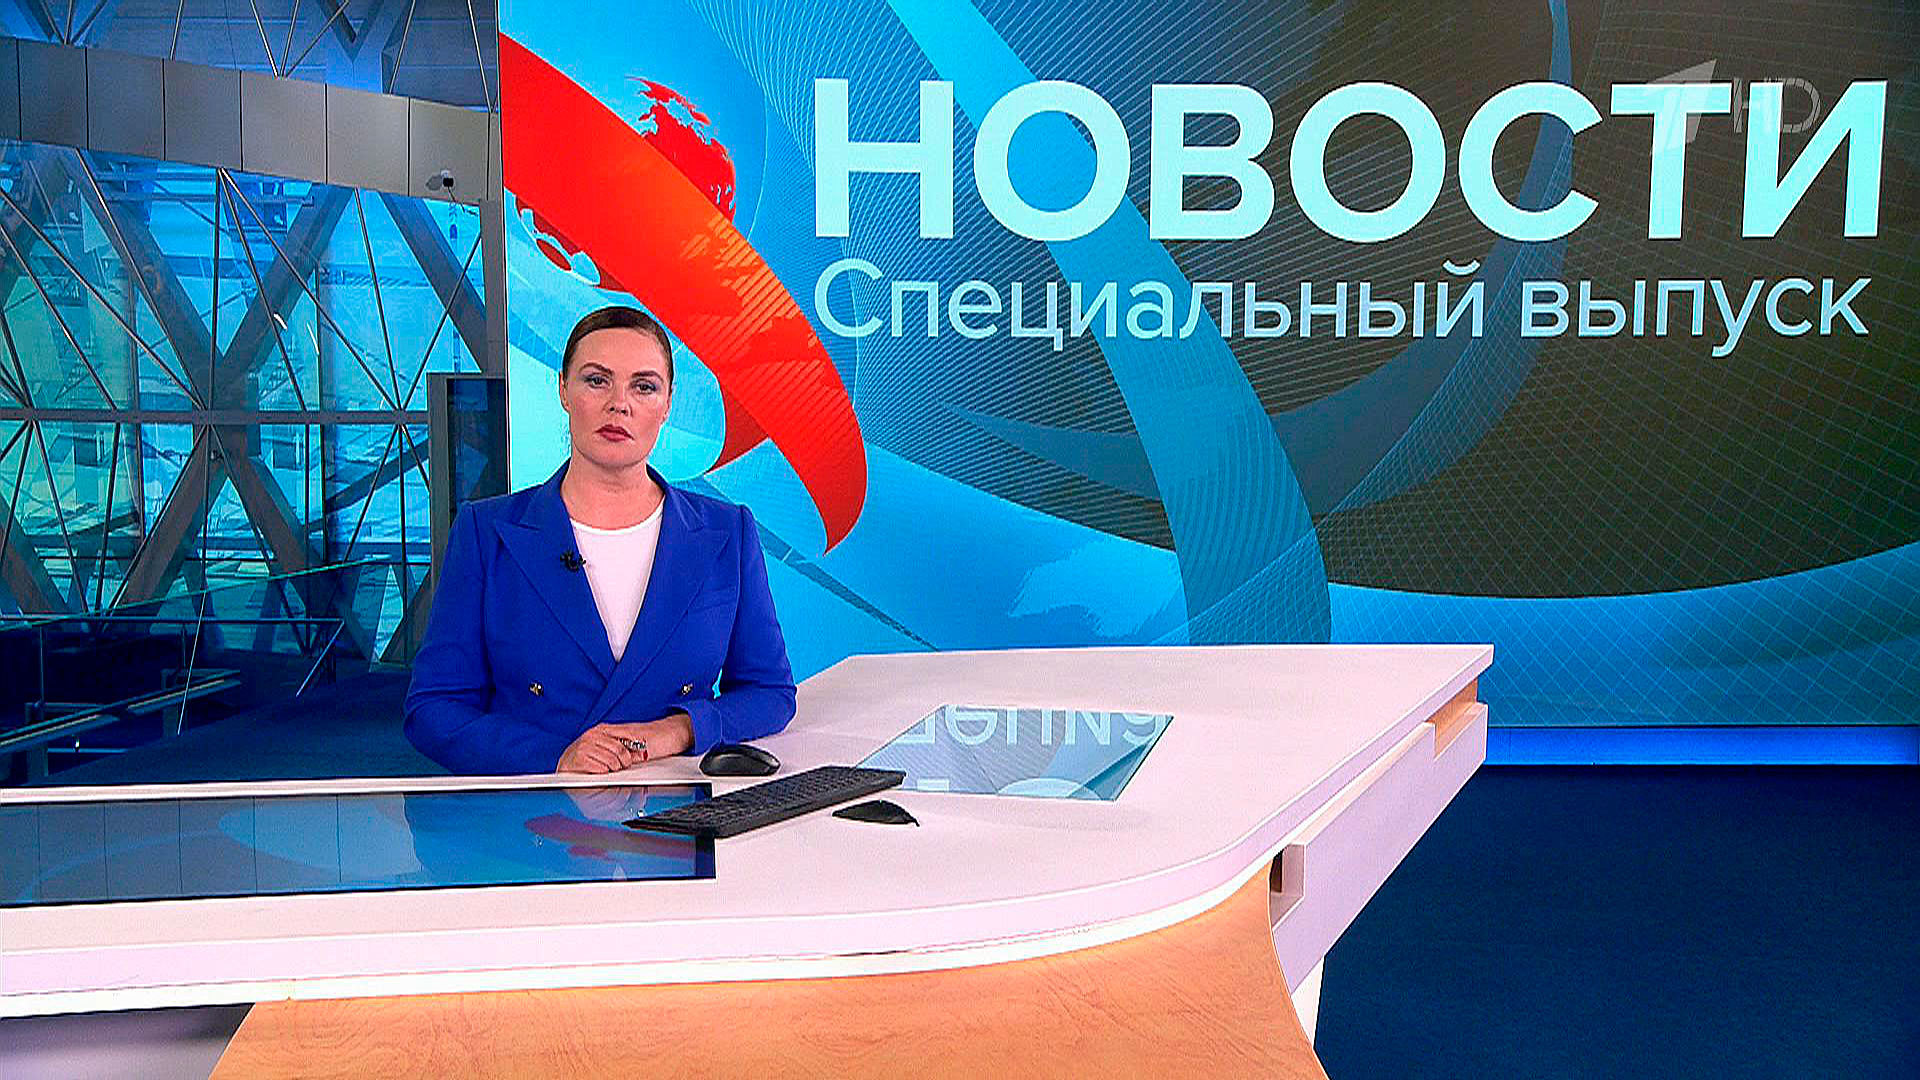 Спецвыпуск новостей 1 канал. Novosti na pervom. Выпуск новостей. Специальный выпуск новостей сегодня. Первый канал.